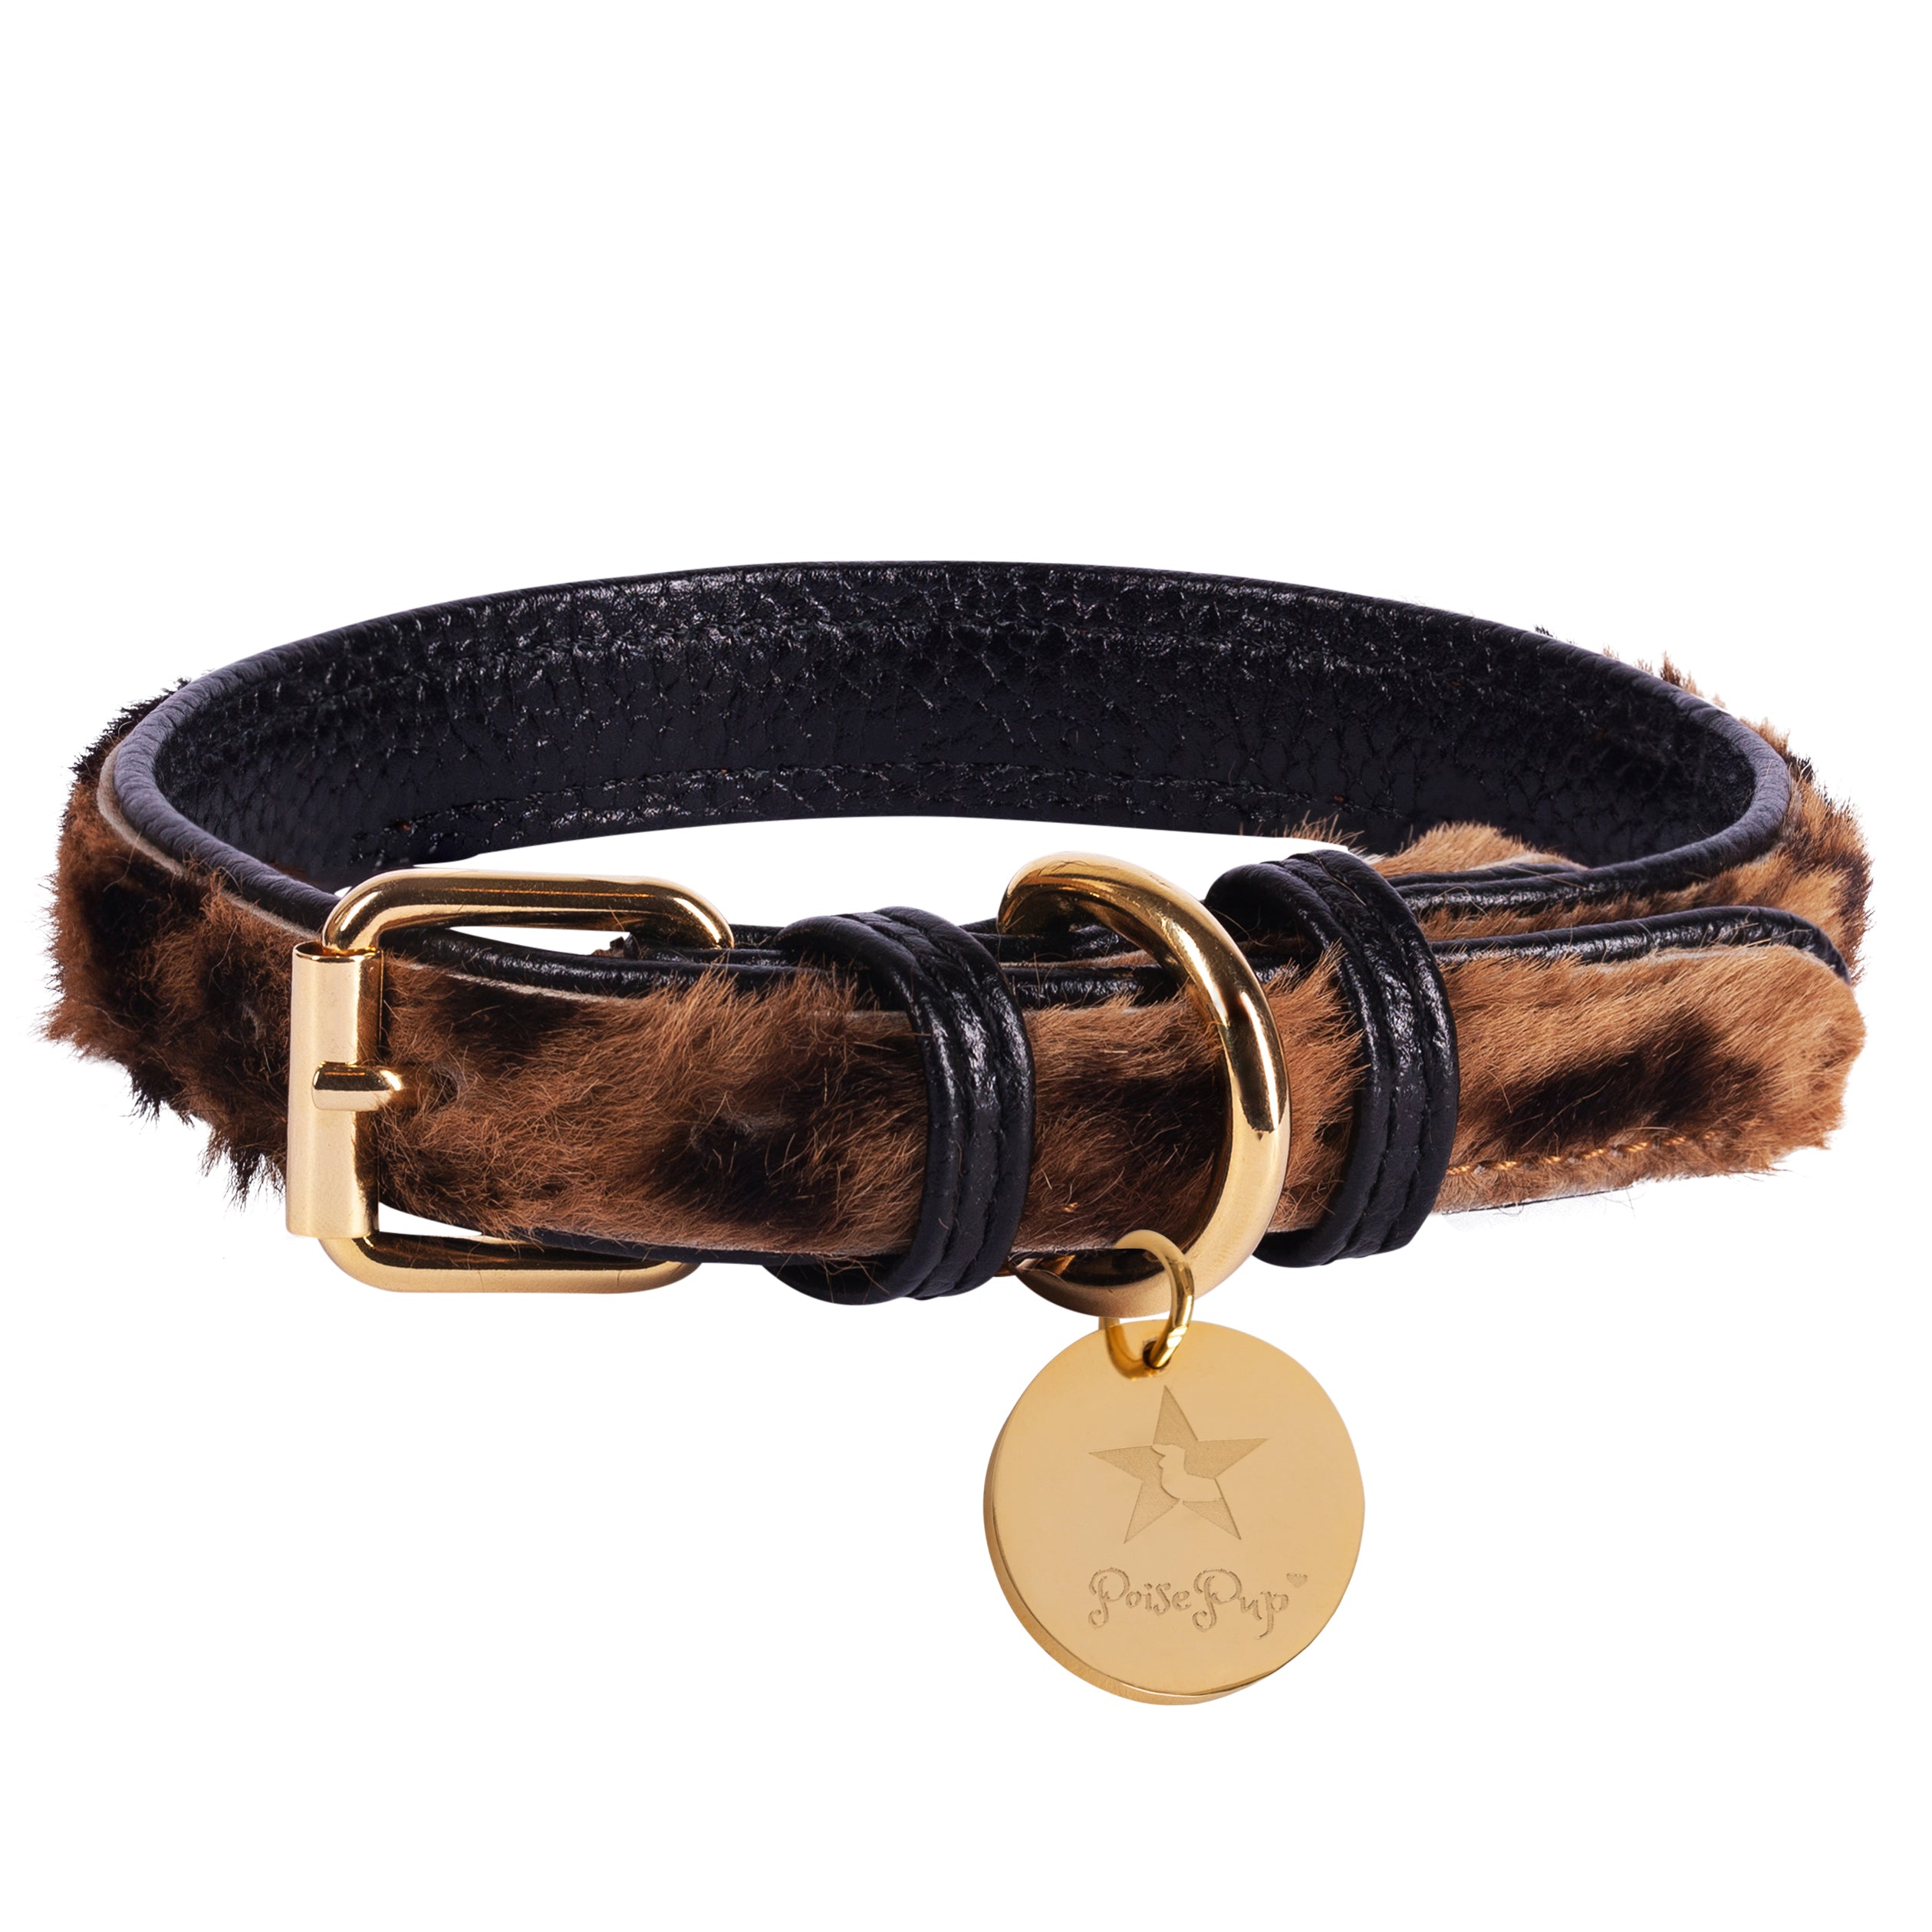 COLLAR - DESERT MINT  Dog collar, Leather dog collars, Designer